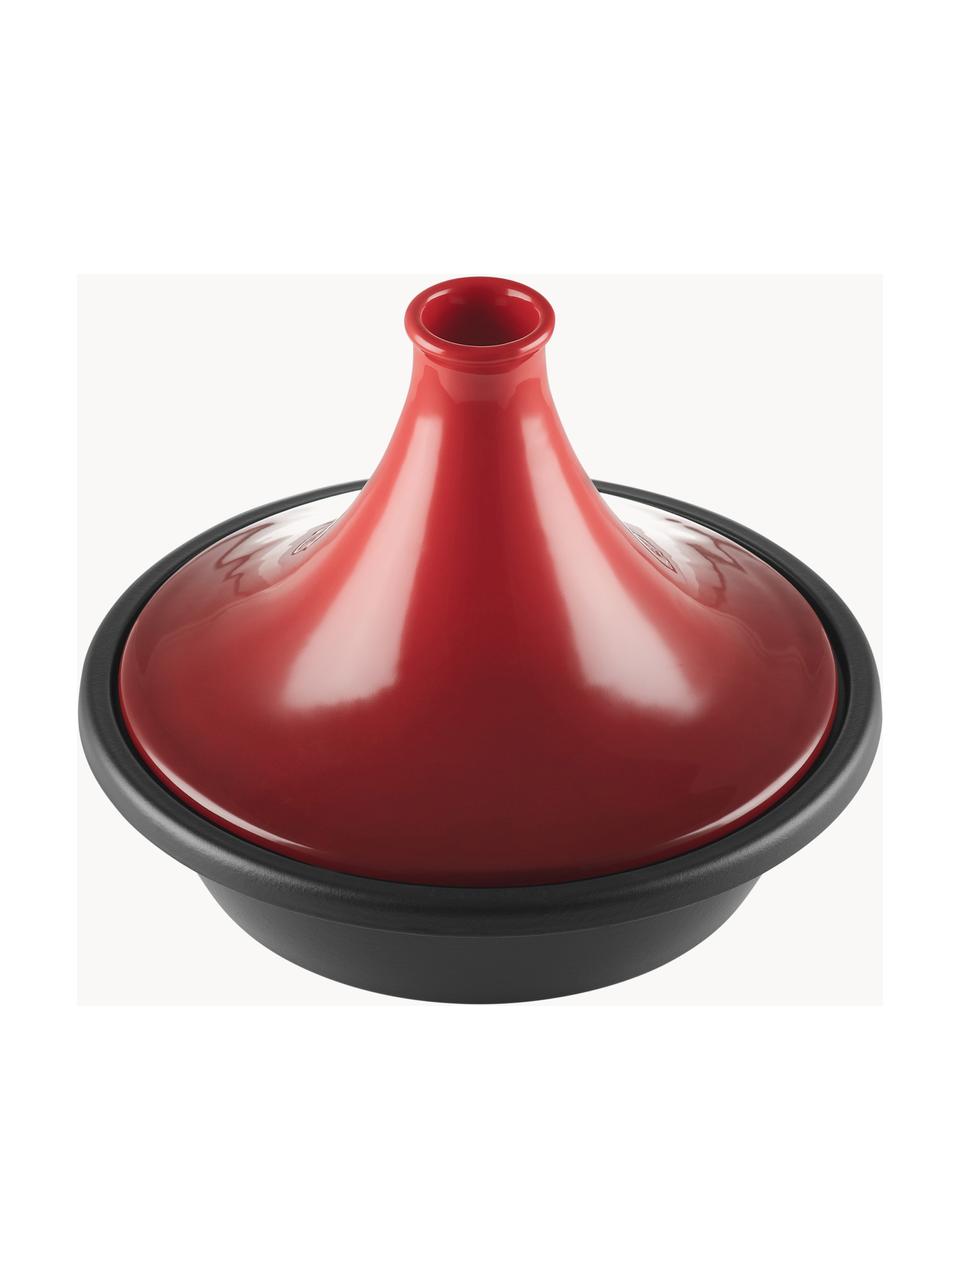 Tagine en fonte émaillée Creuset, Rouge, noir, Ø 32 cm, 3,7 L